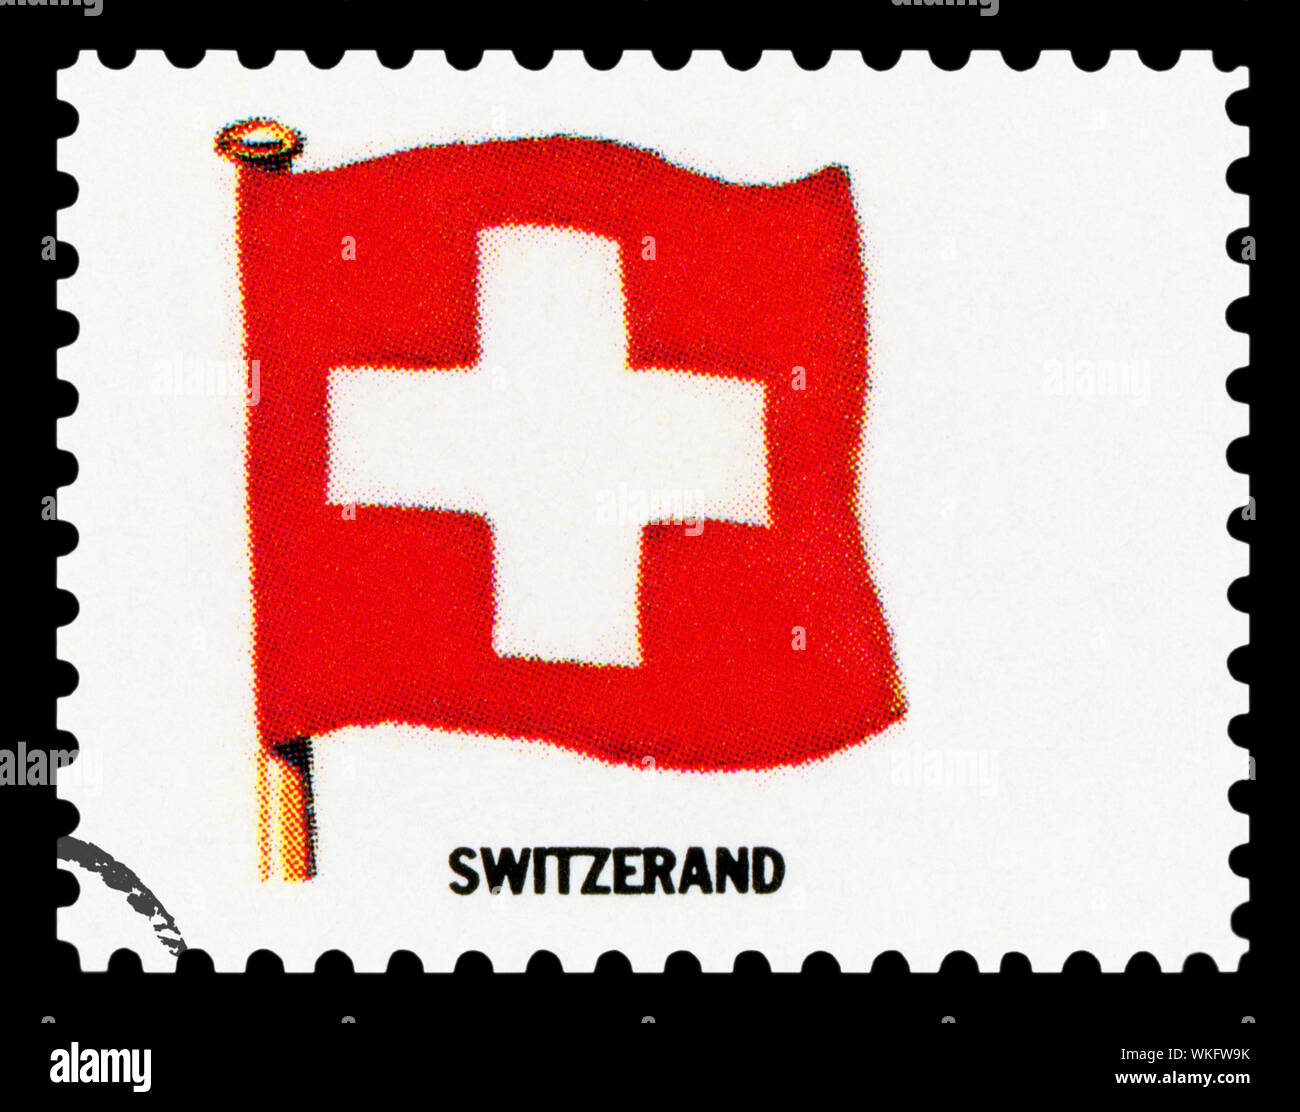 SWITZERLAND FLAG - Postage Stamp isolated on black background. Stock Photo